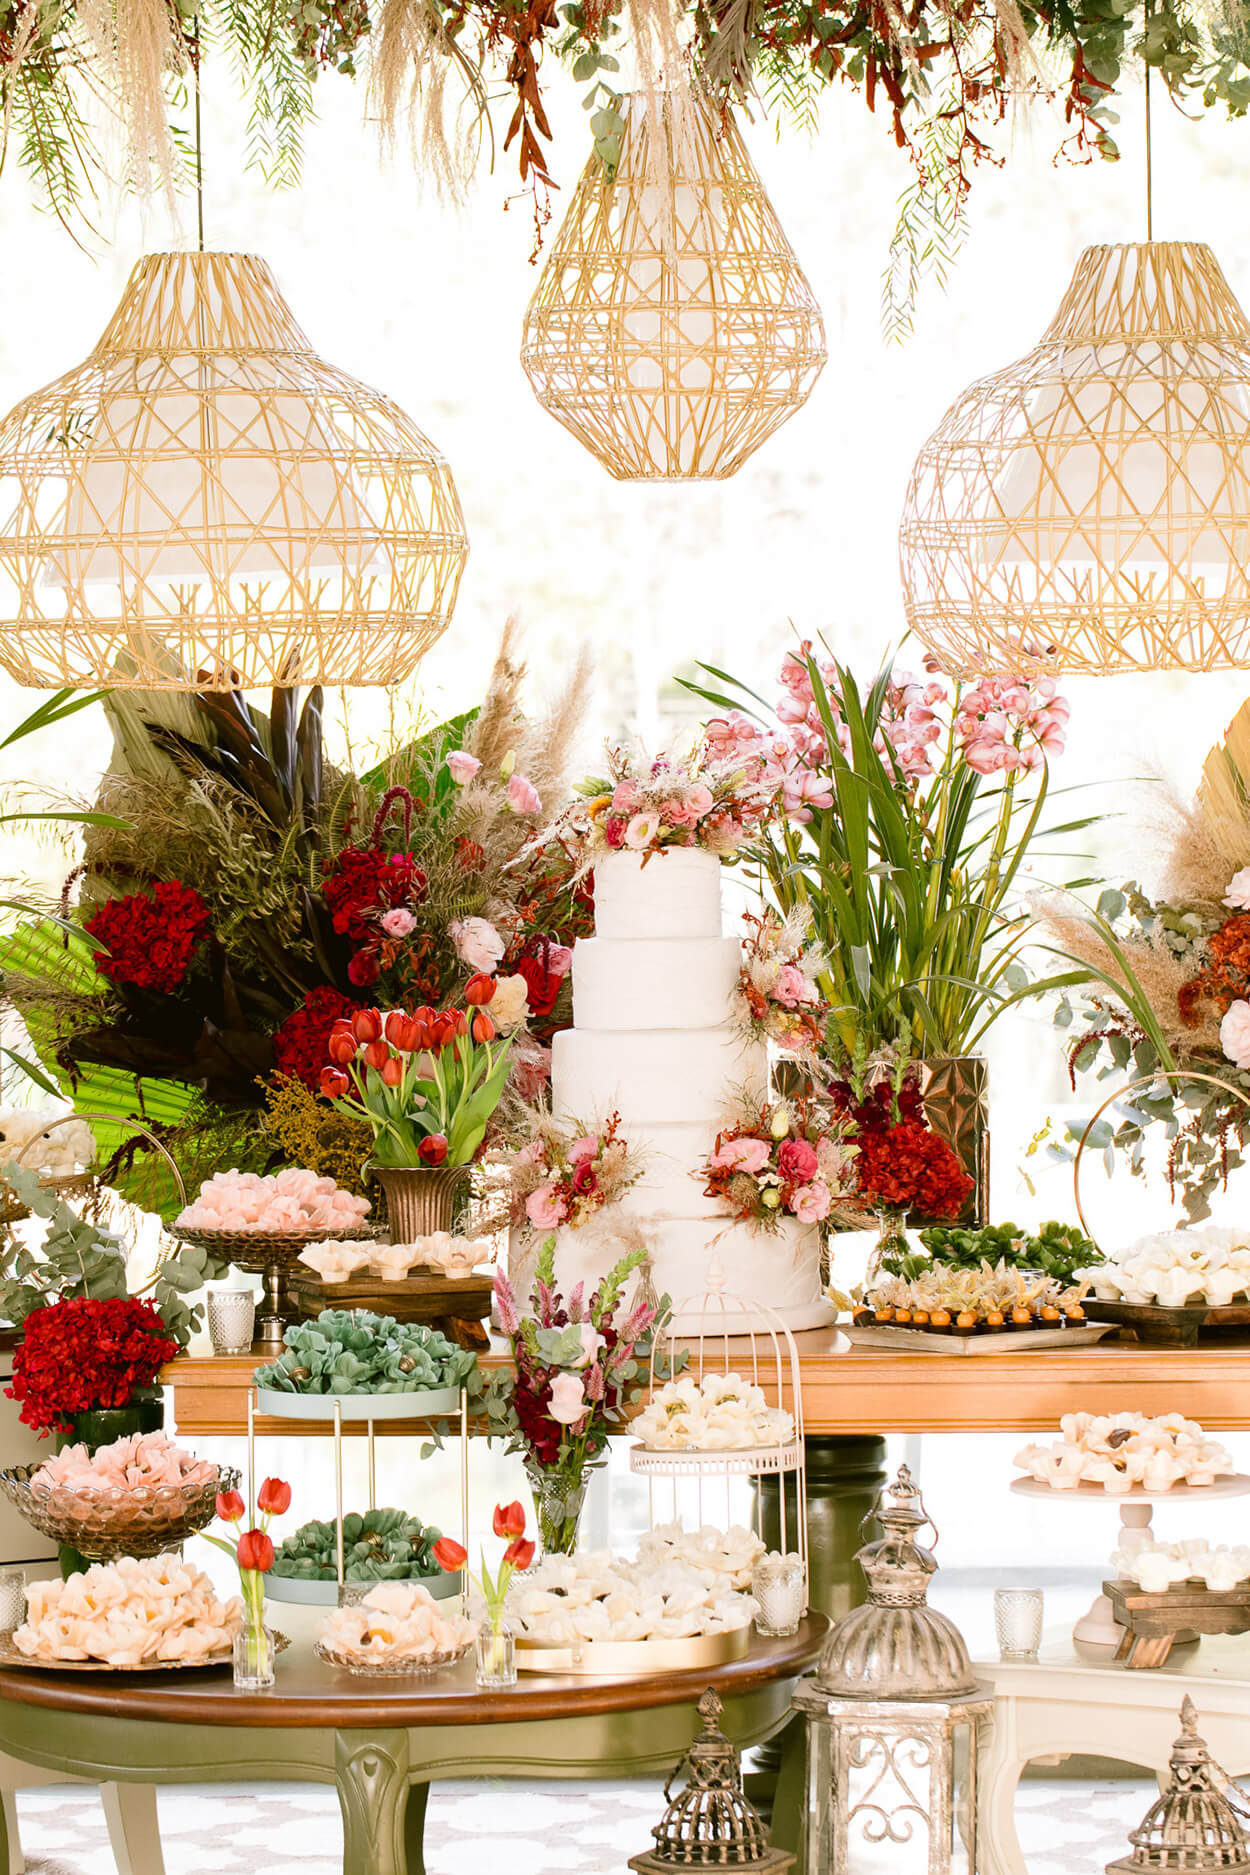 Mesa com bolo de casamento com cinco andares e vasos de flores vermelhas rosas e brancas e luminarias pendentes rusticas